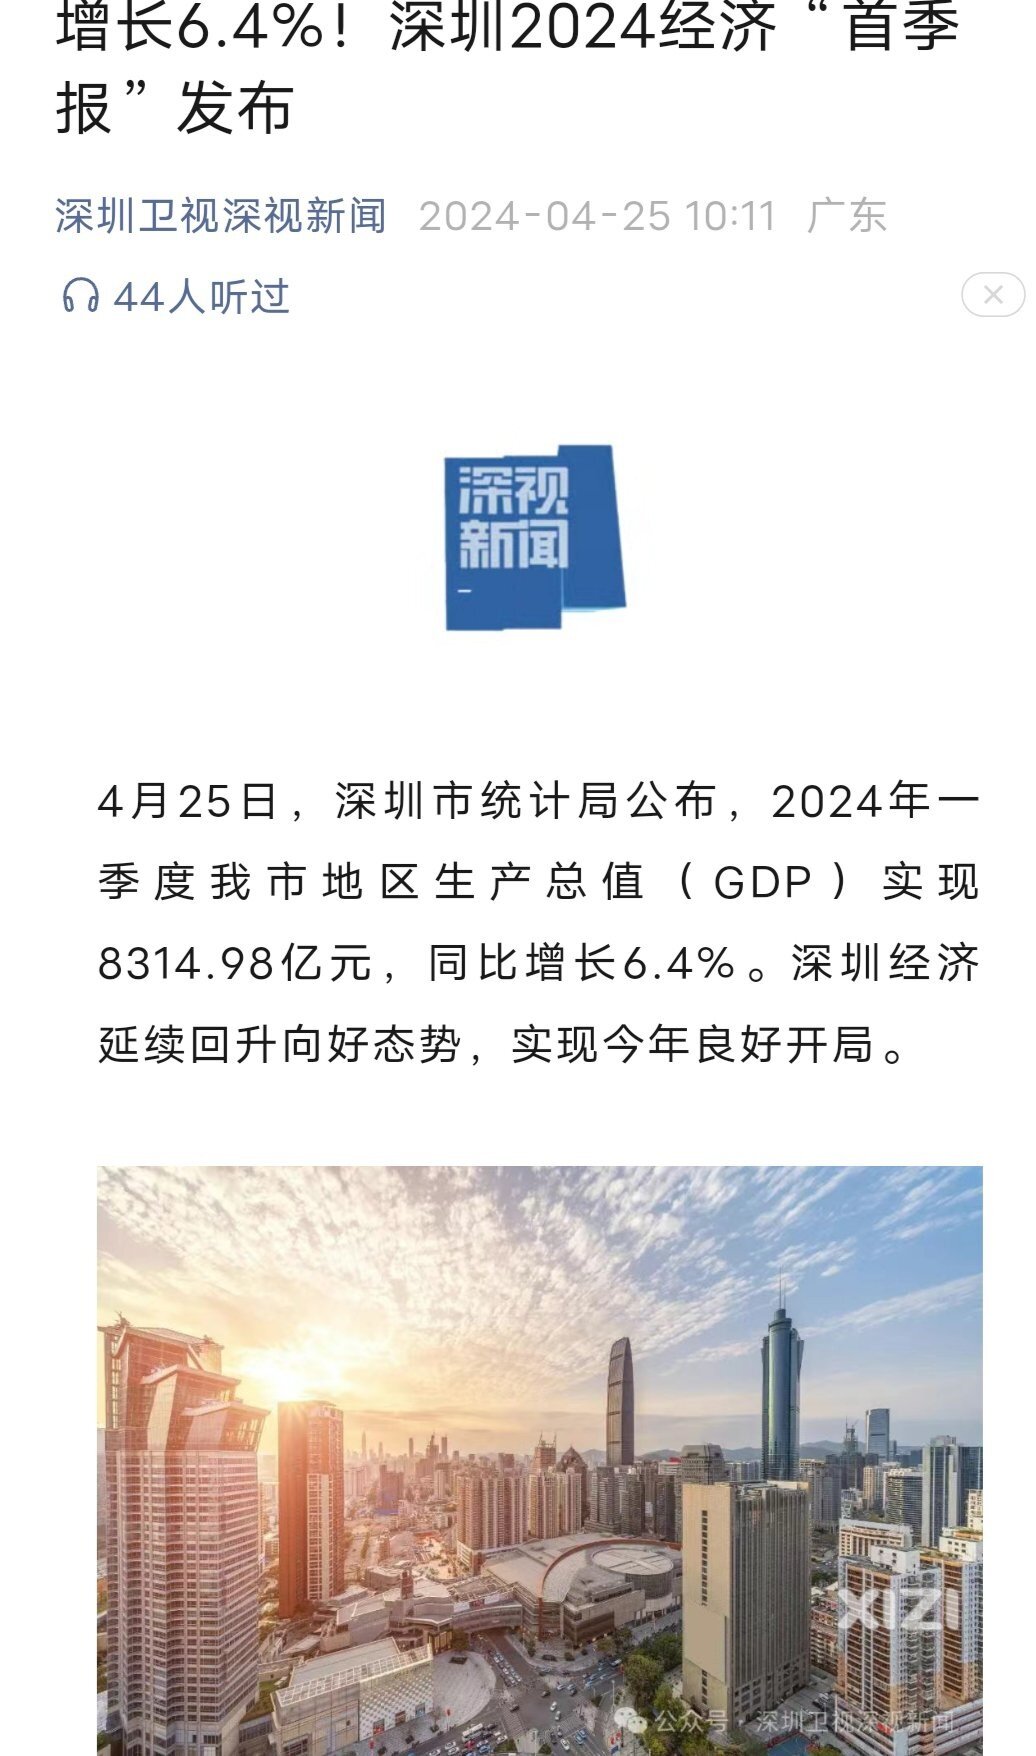 超过上北快了！深圳真猛！2024年第一季度就超过很多省一年GDP了